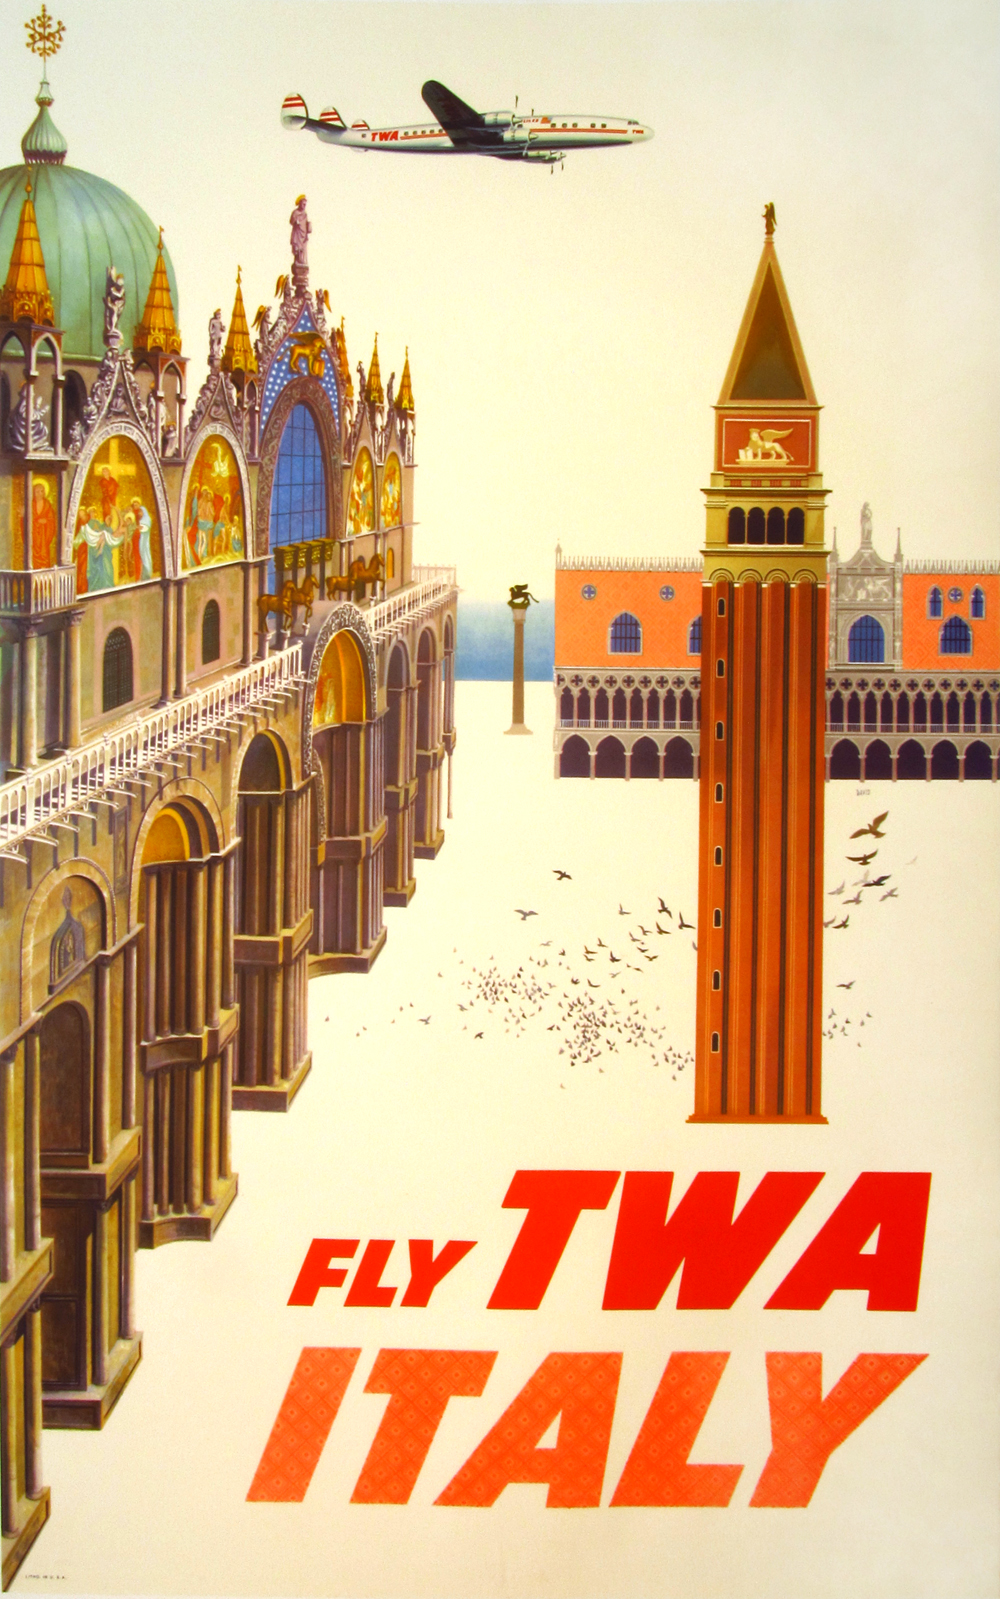 Fly TWA Italy